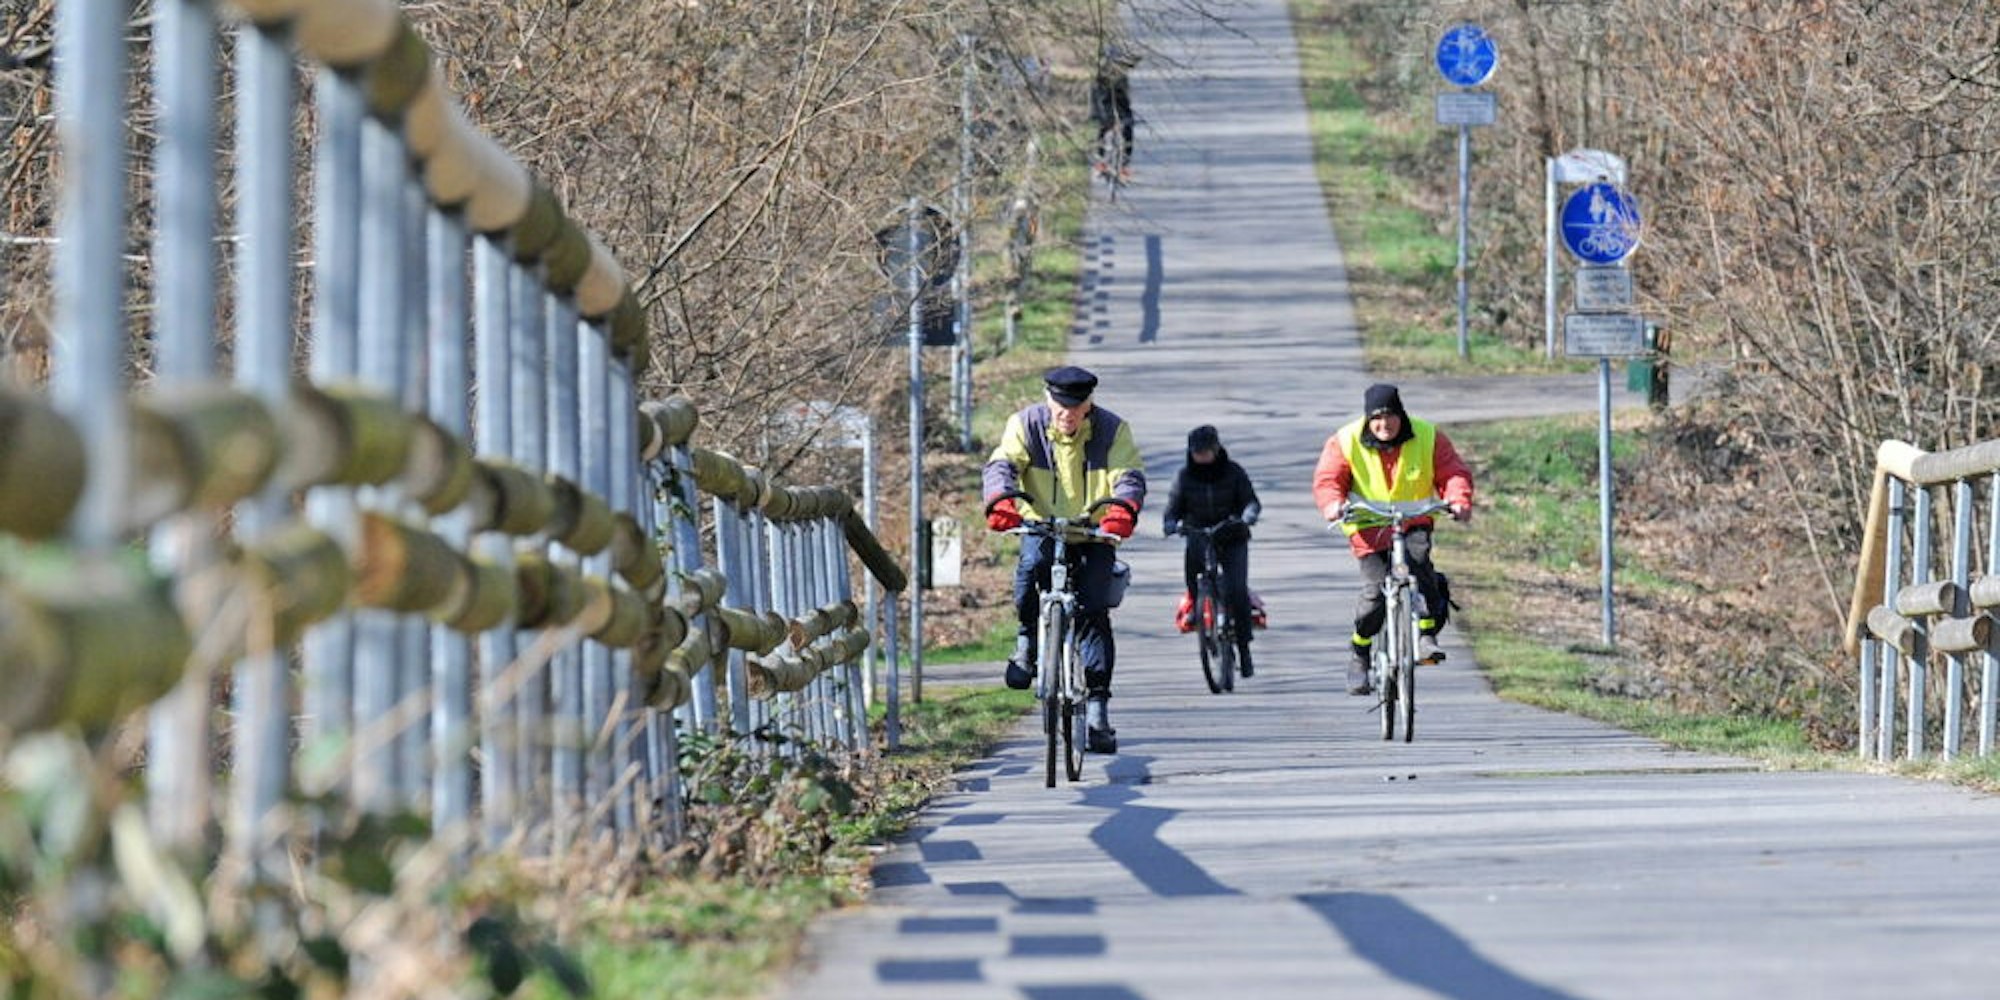 Die Balkantrasse wird gut angenommen und ist für Radfahrer eine schnelle Verbindung zwischen Hilgen und Burscheid.